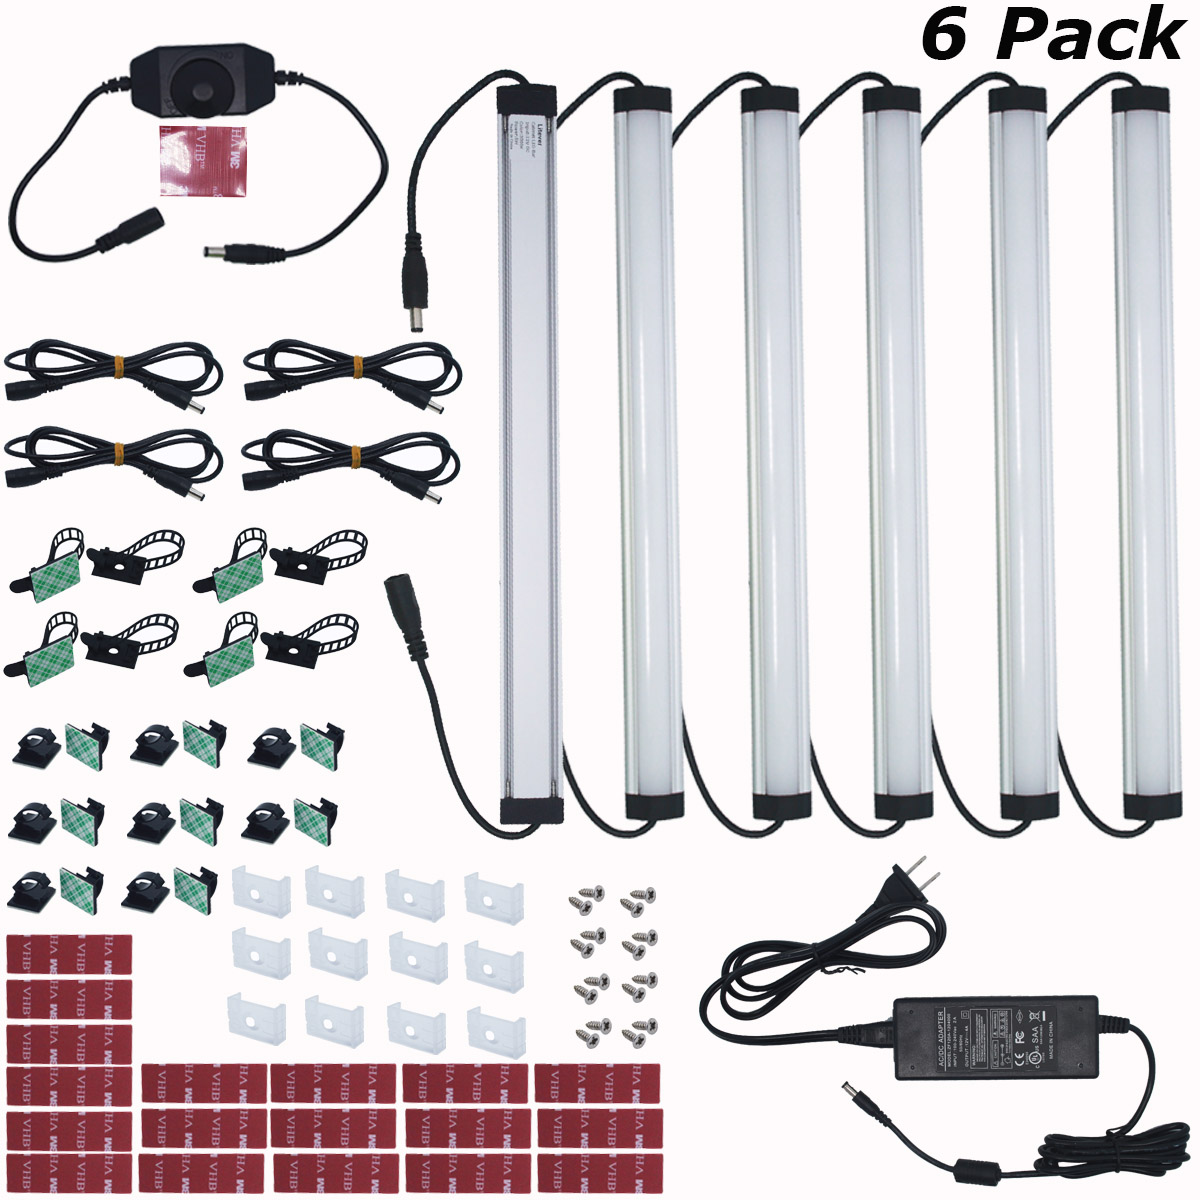 6 Pack Under Cabinet Light Bar Kits